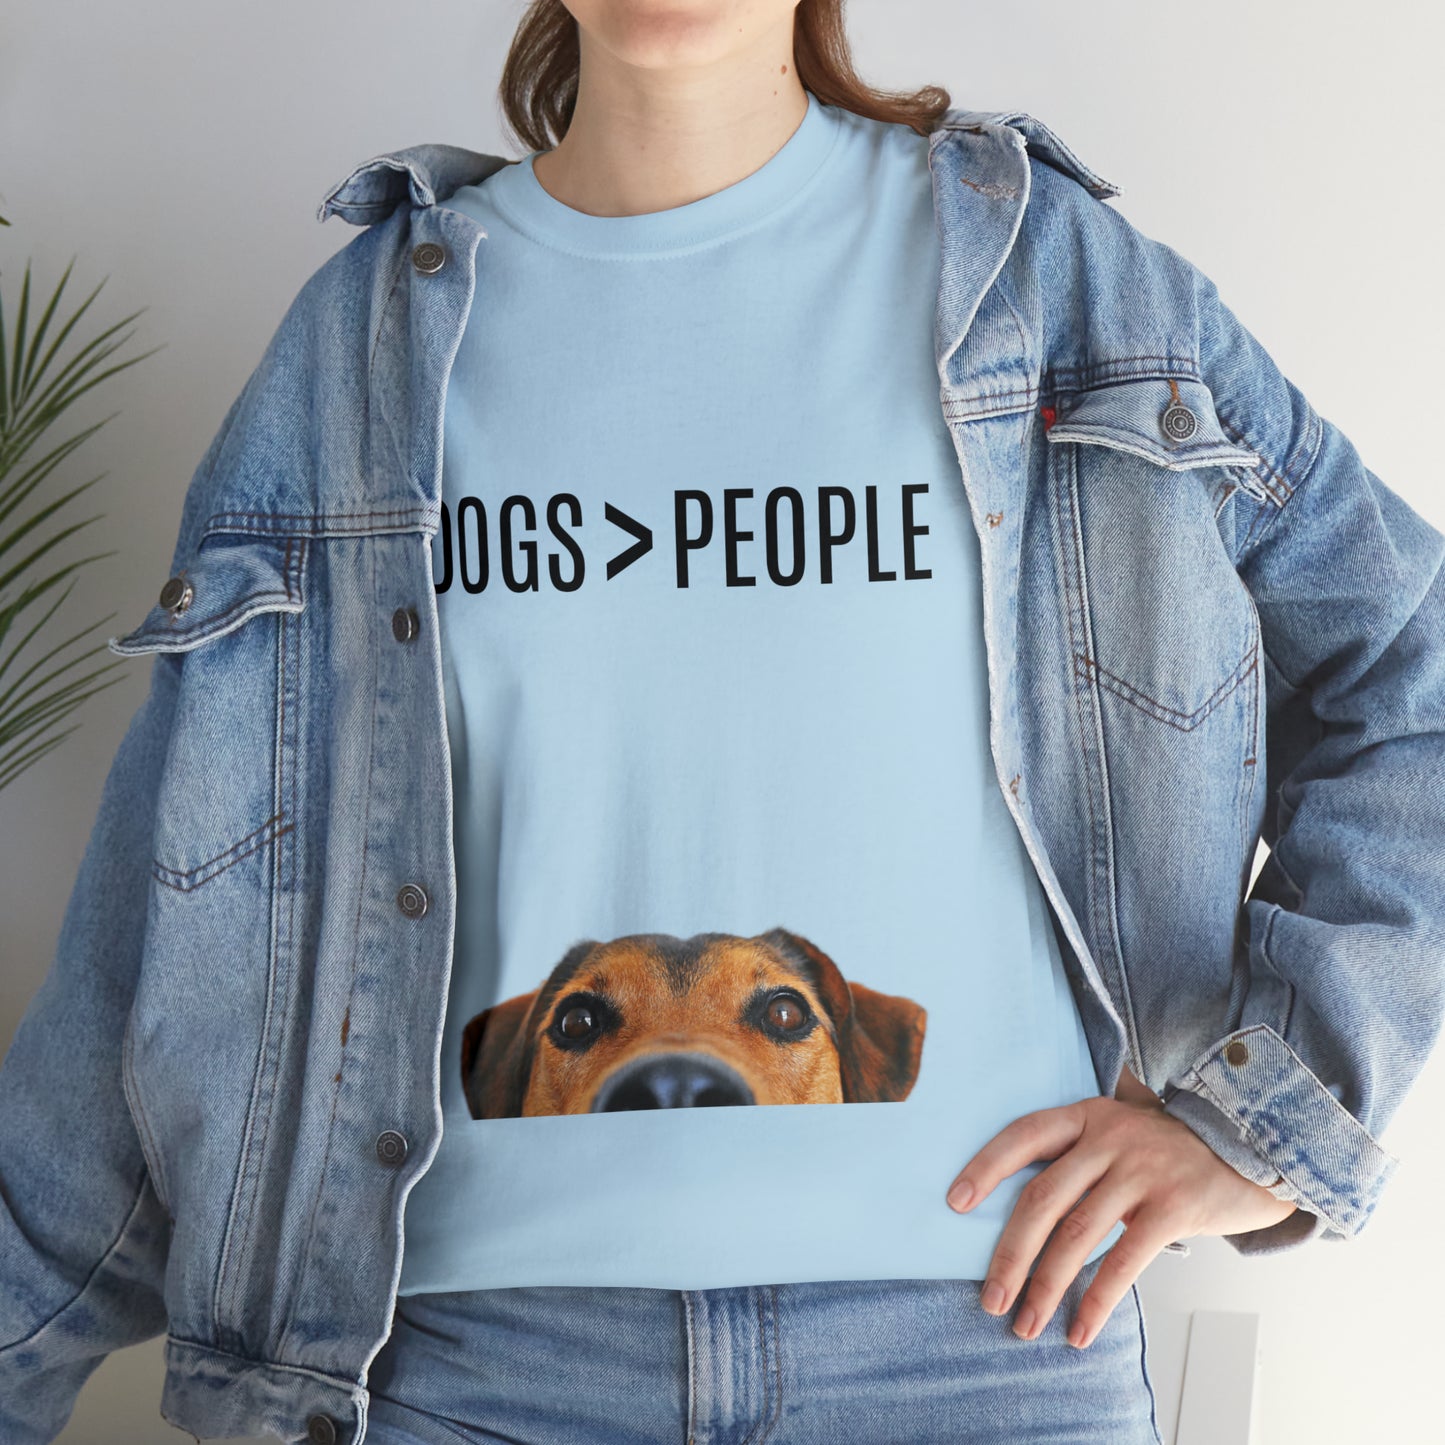 Dogs>People - Unisex Heavy Cotton Tee